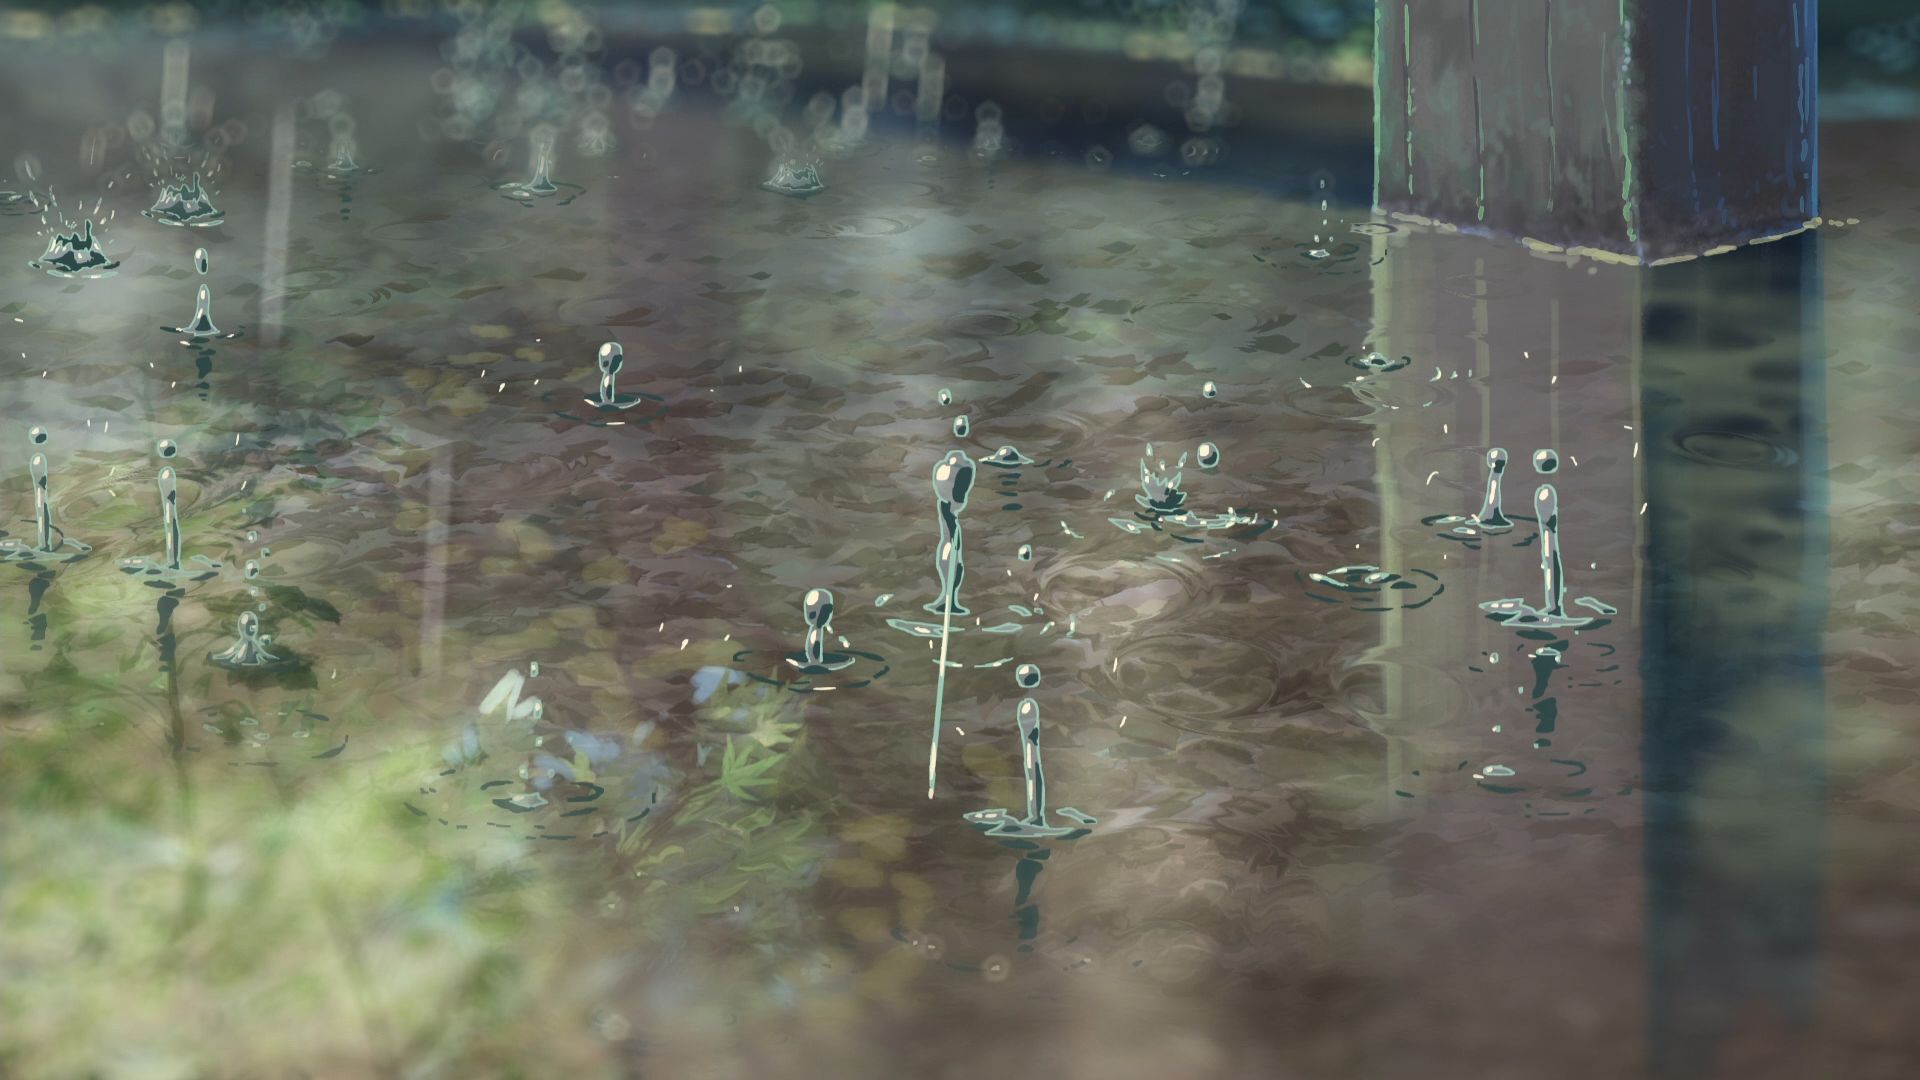 蓝光电影[言叶之庭]唯美截图壁纸 4k电影《言叶之庭》1080p截图,图片